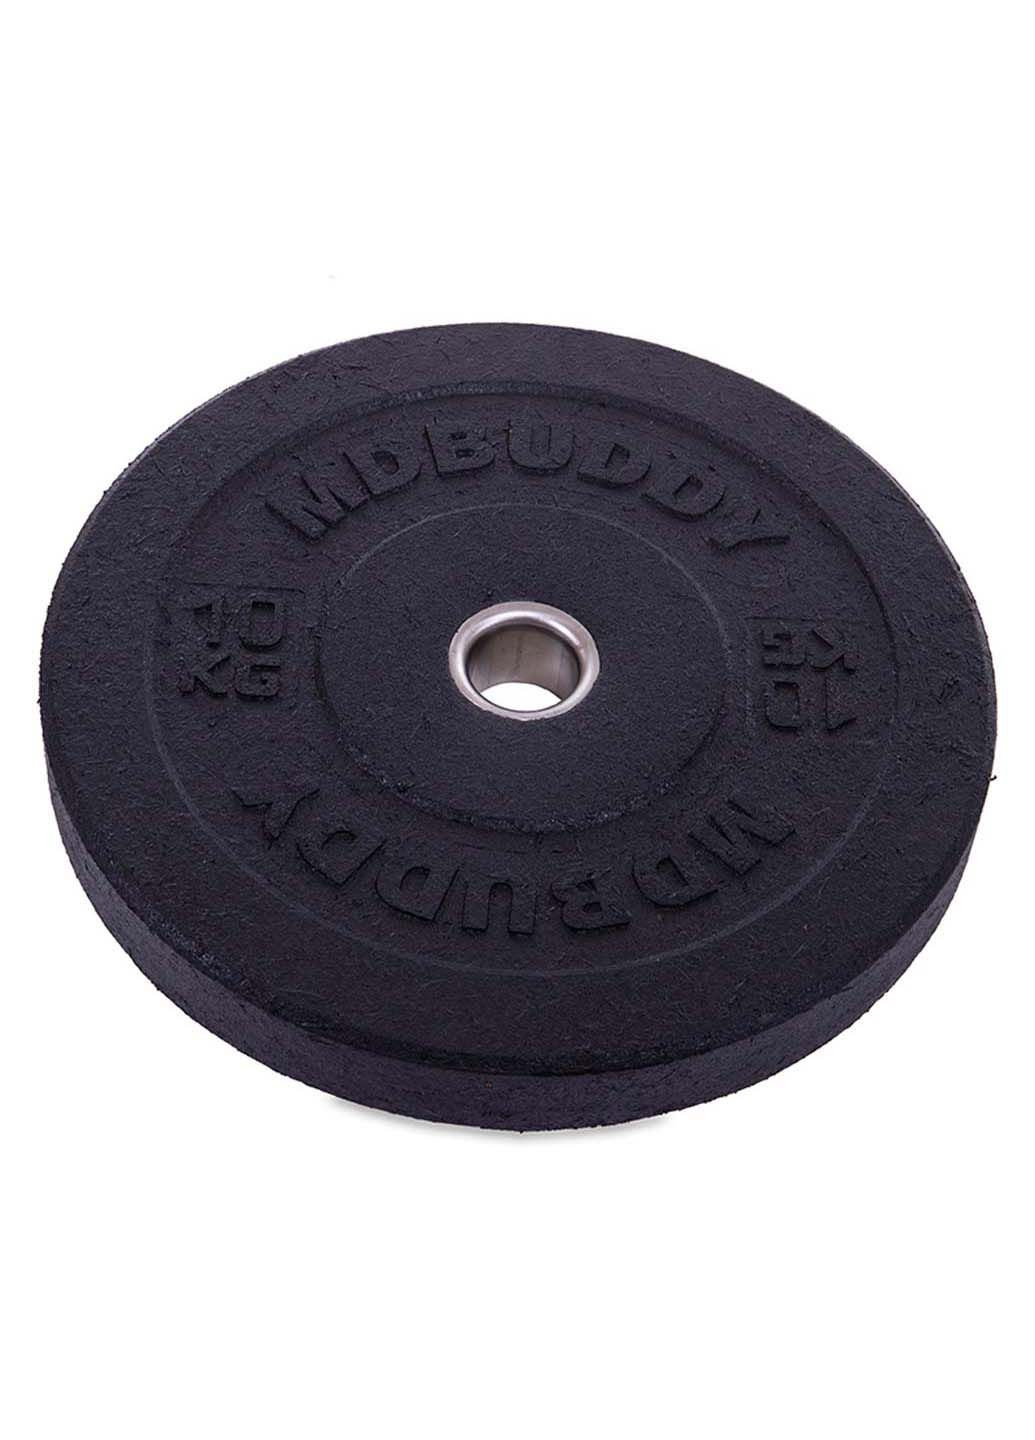 Млинці диски бамперні для кросфіту Bumper Plates TA-2676 10 кг MDbuddy (286043760)